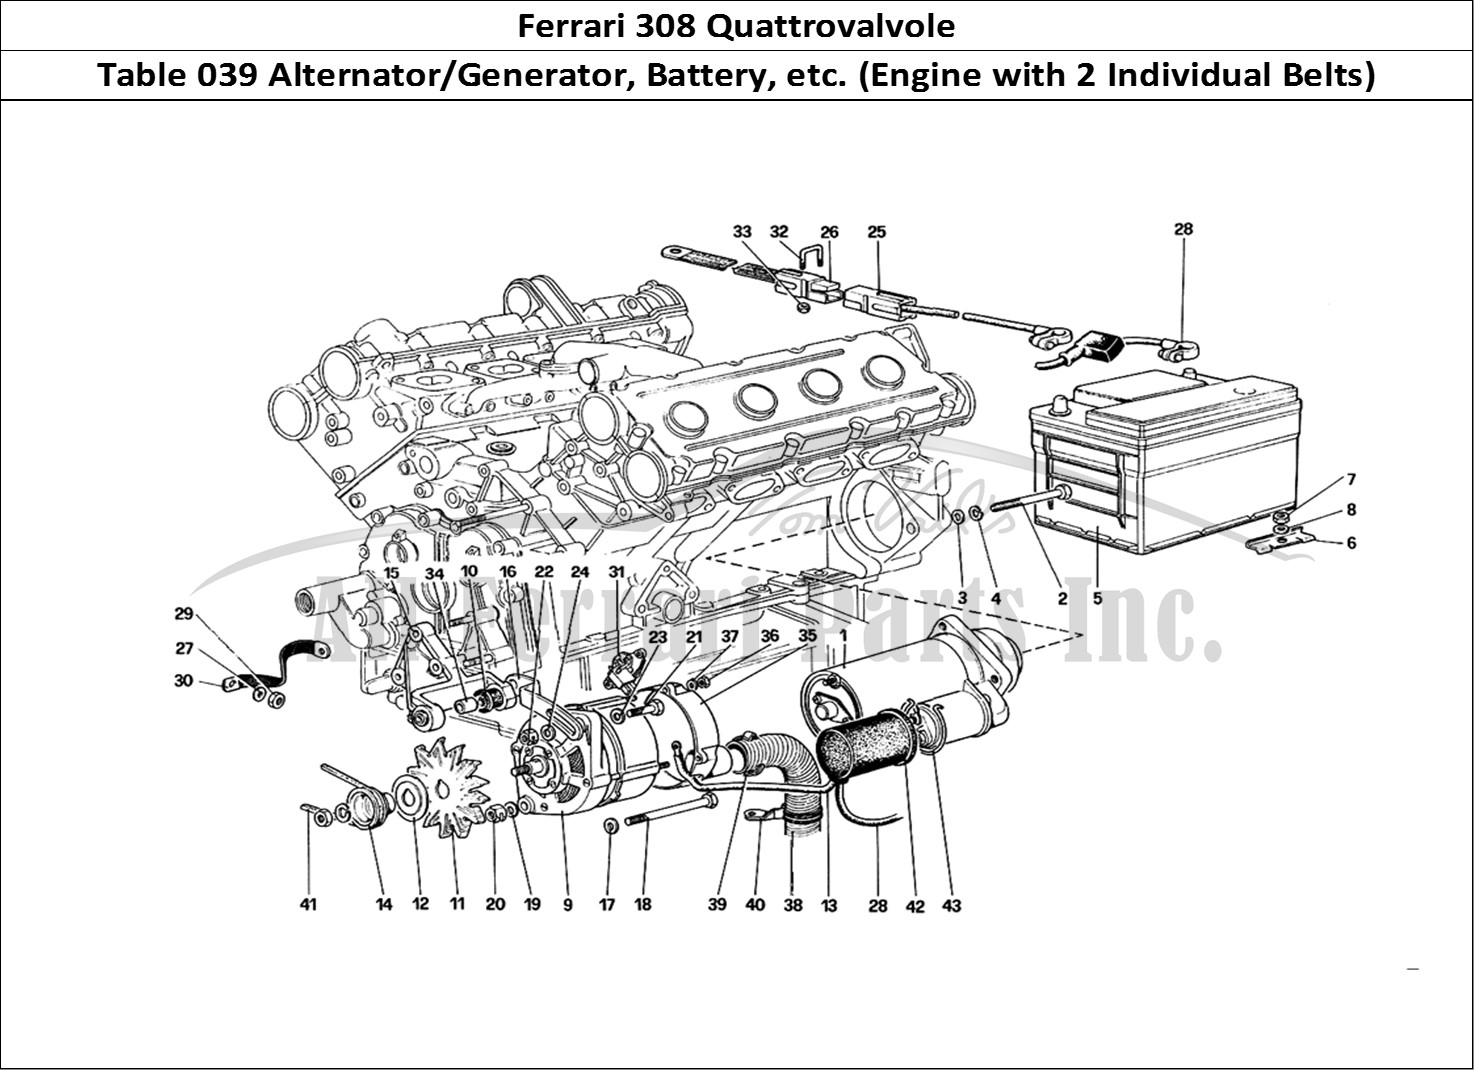 Ferrari Parts Ferrari 308 Quattrovalvole (1985) Page 039 Electric Generating Syste